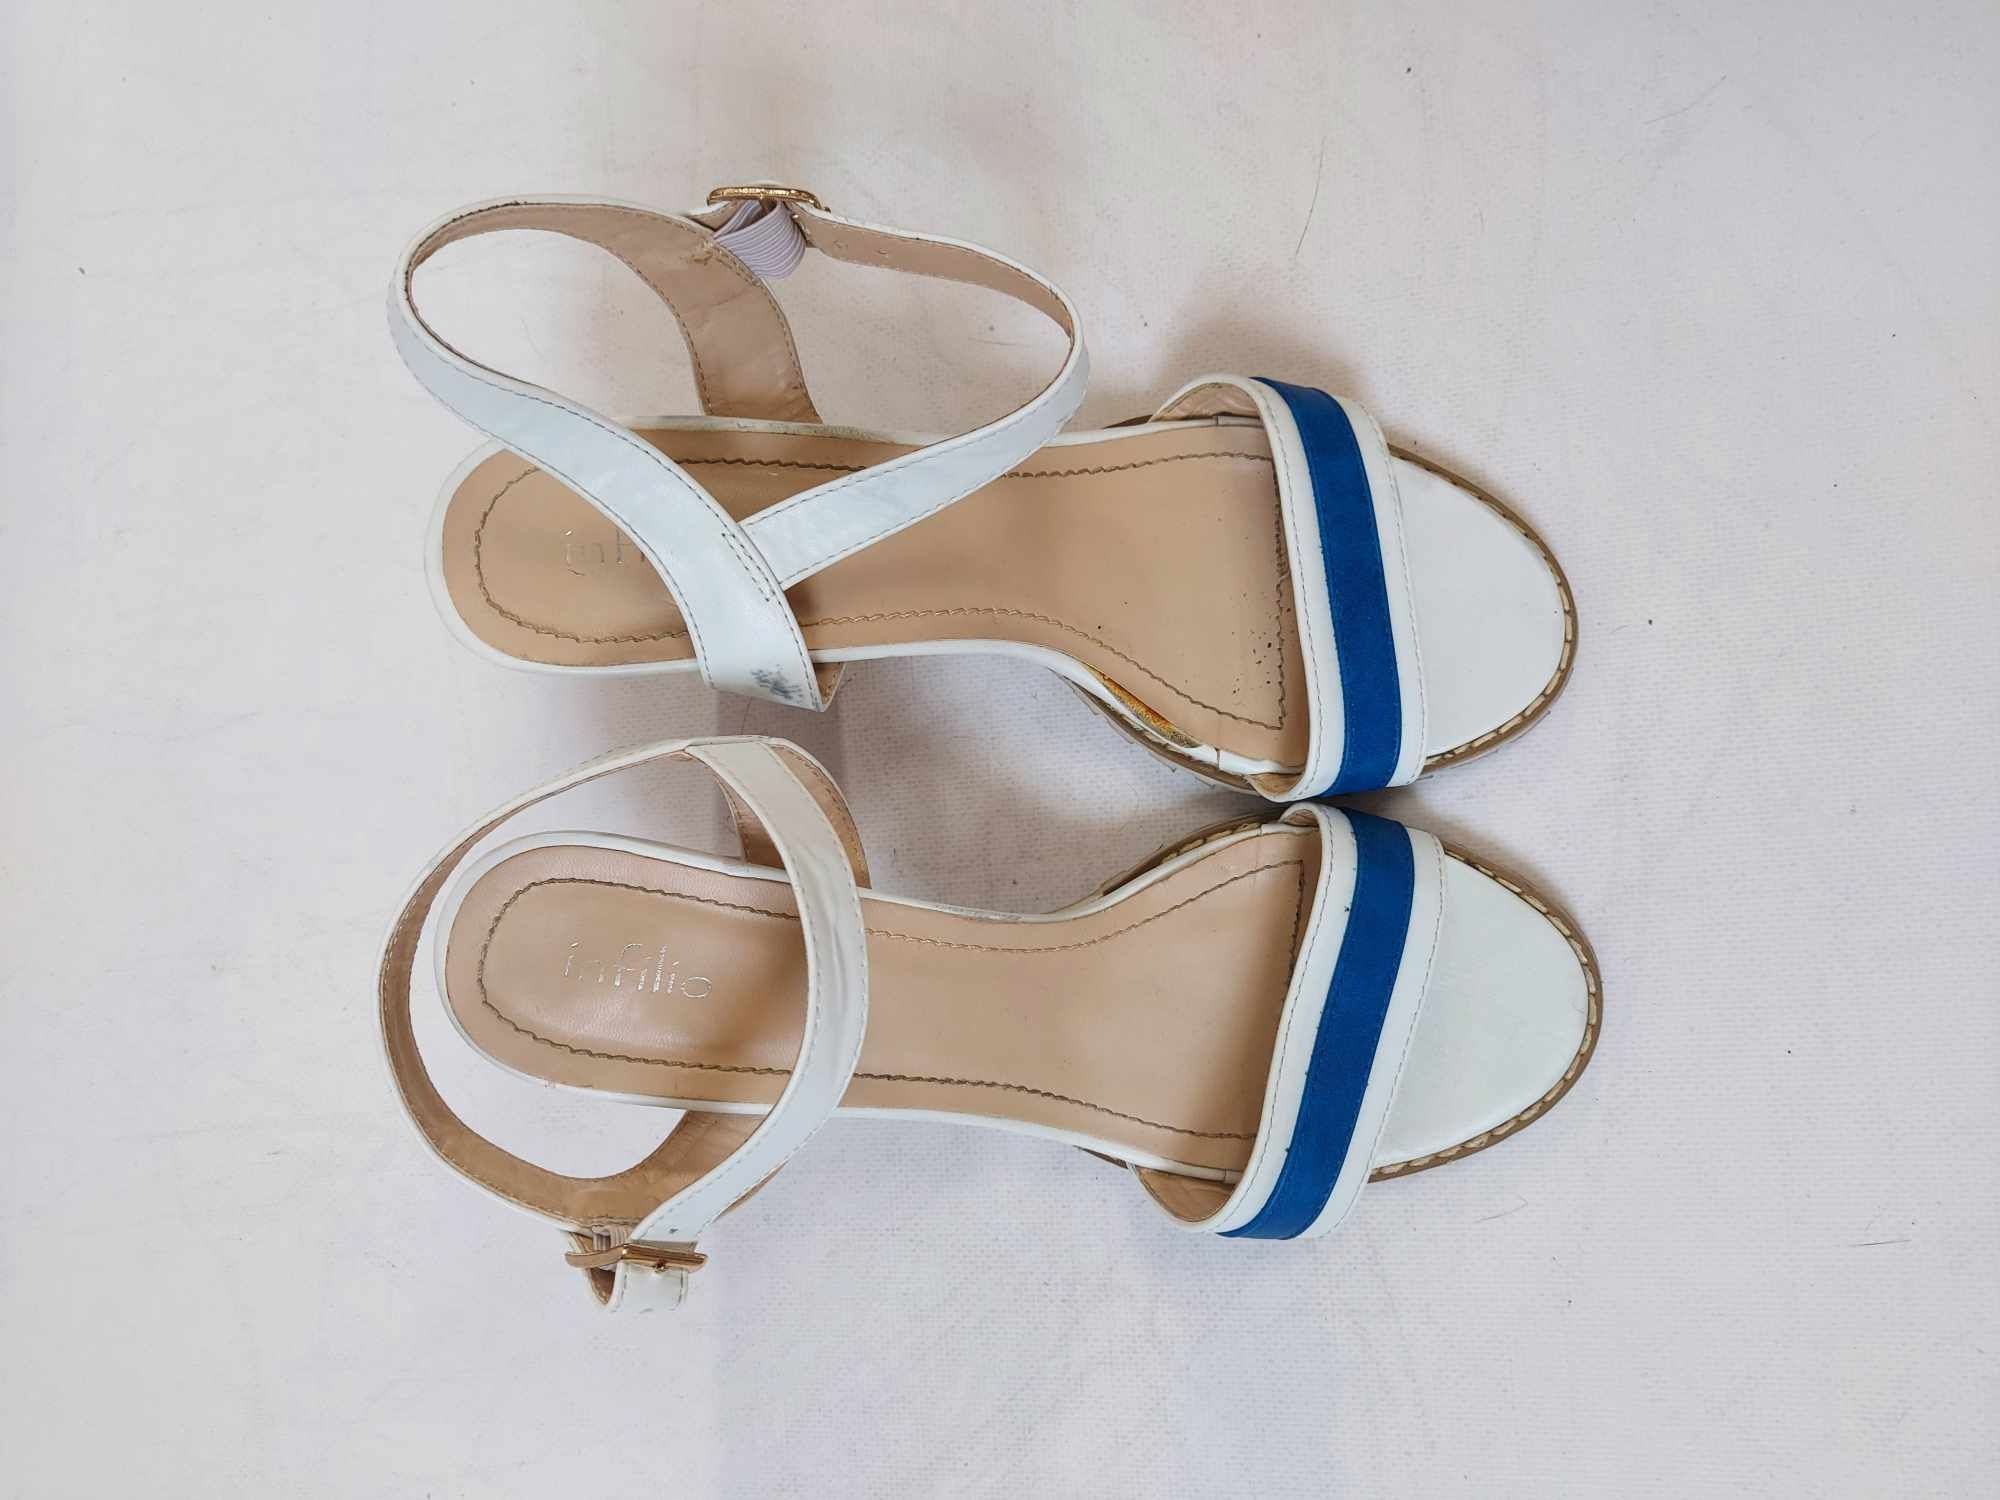 Białe sandały z niebieskim paskiem akcentem zapinane na kostce Infilio